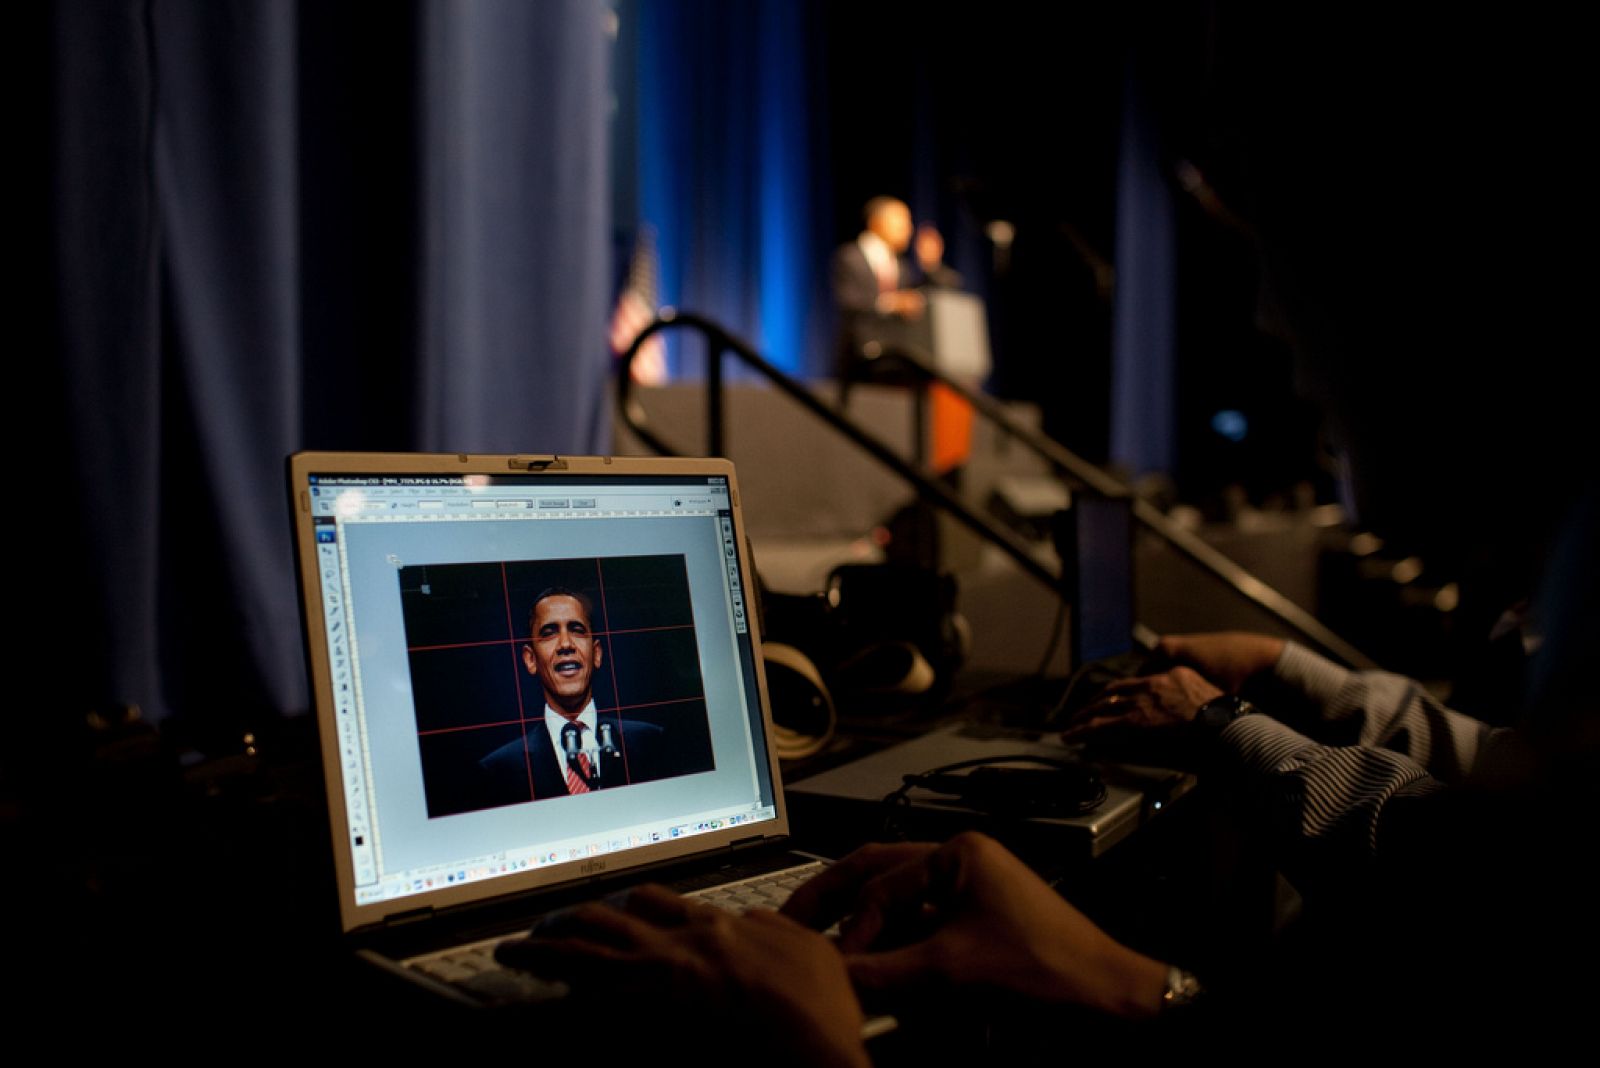 Una foto del presidente Barack Obama en un ordenador mientras el da un discurso en Nueva York